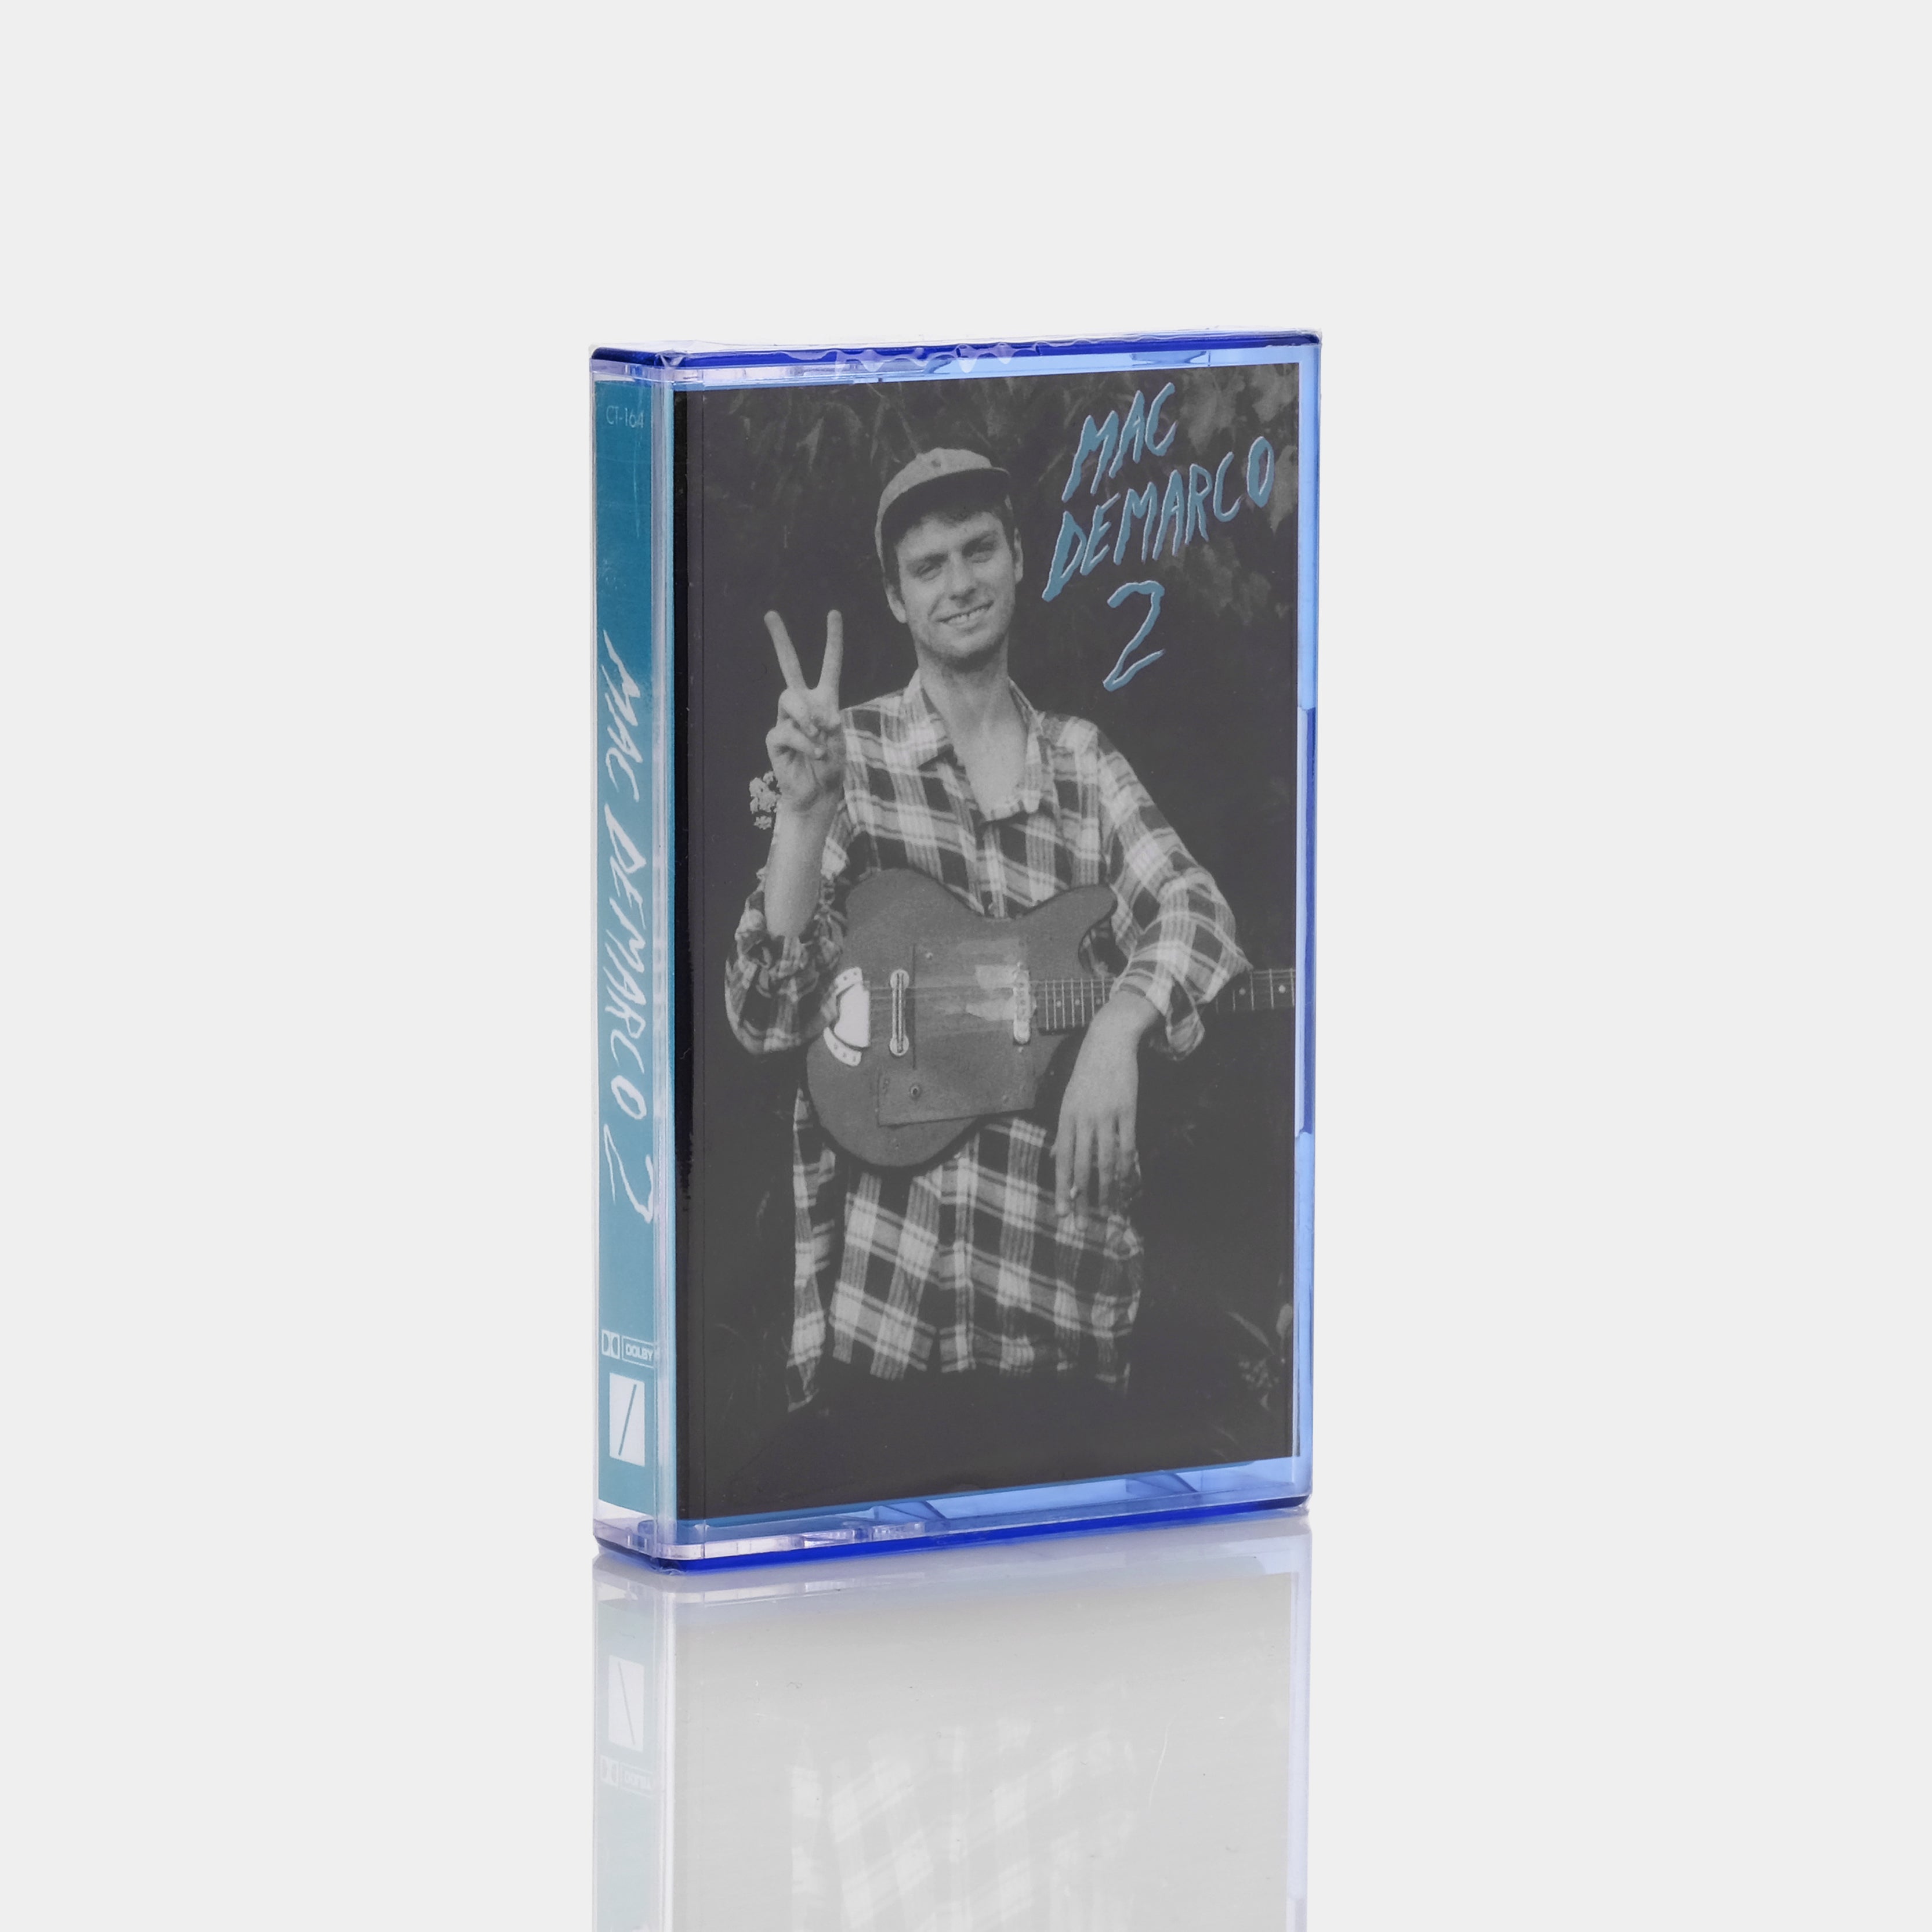 Mac Demarco - 2 Cassette Tape